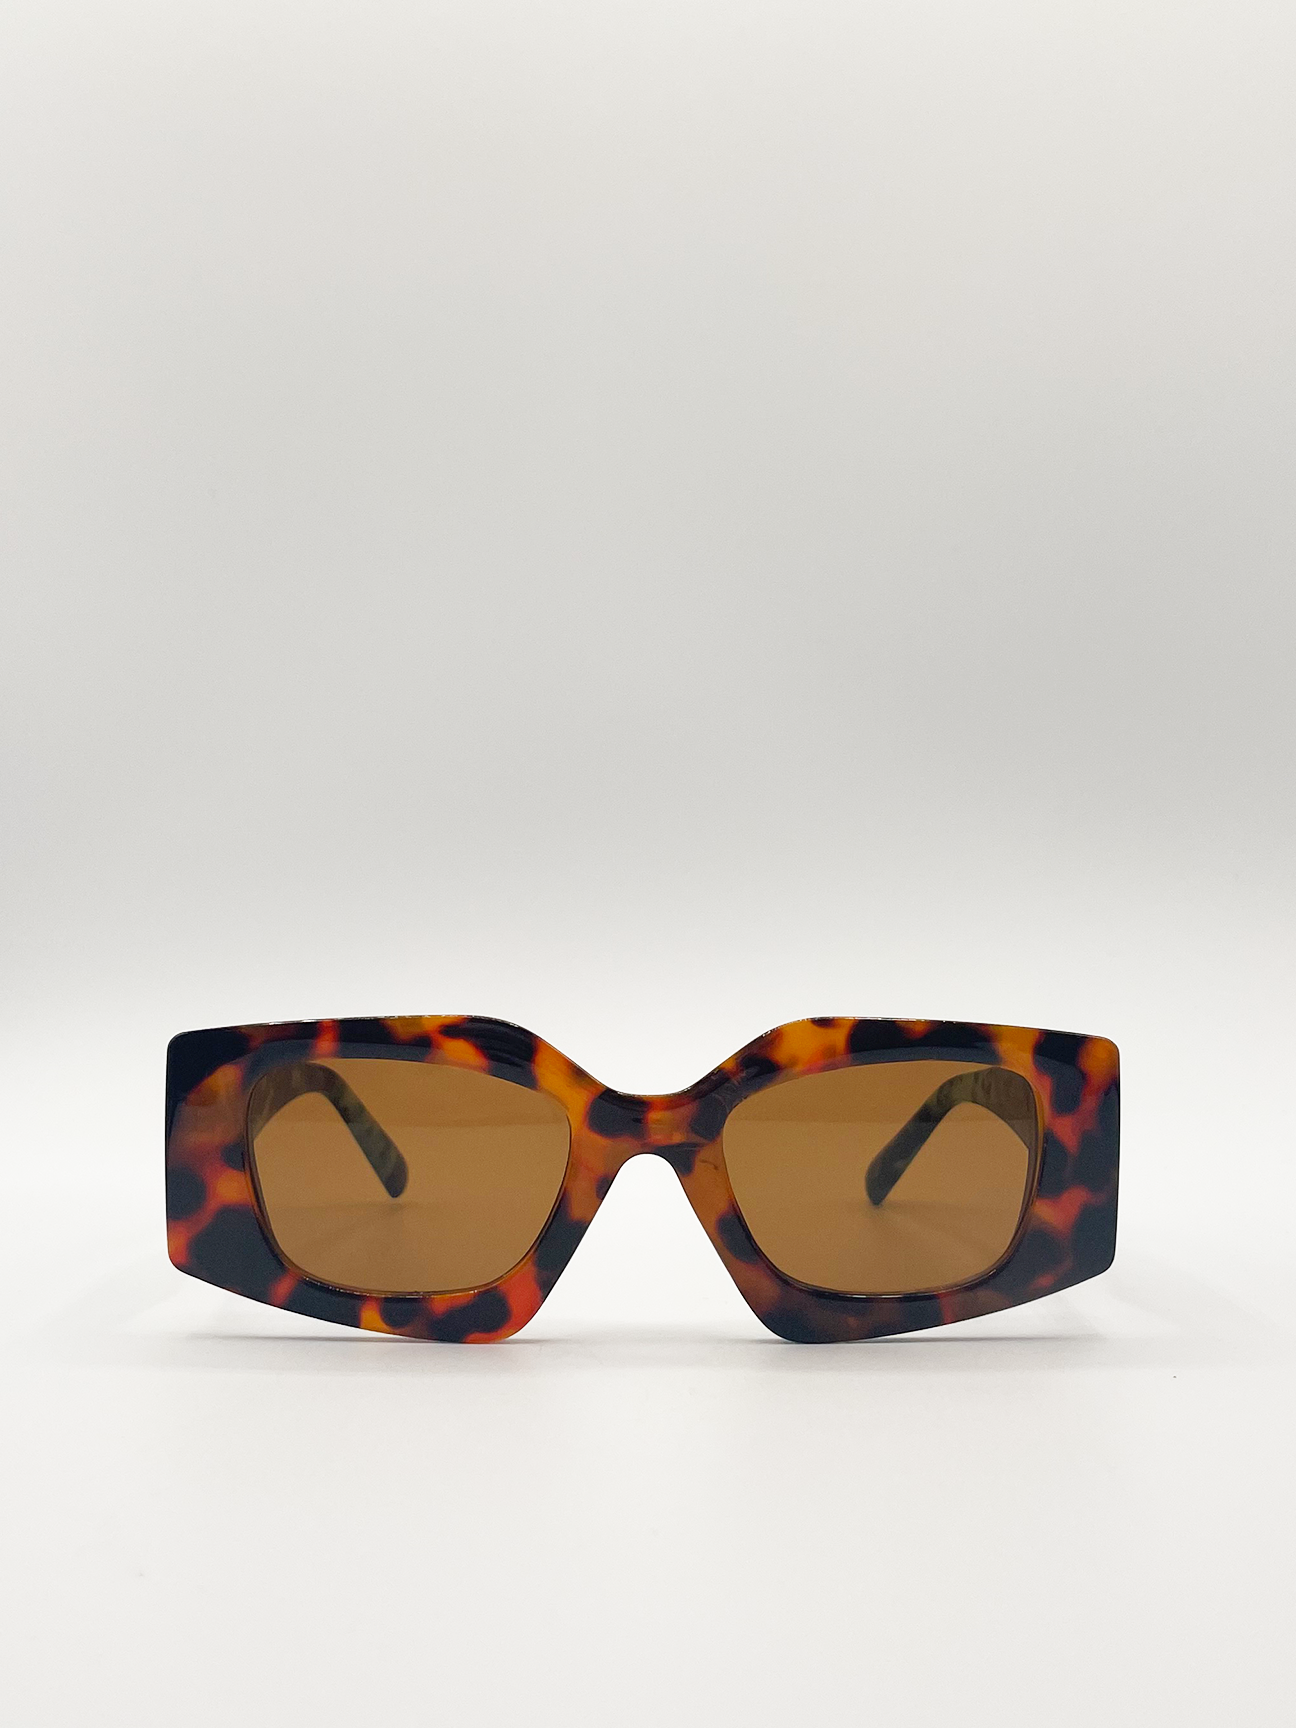 Angular sunglasses in brown tort